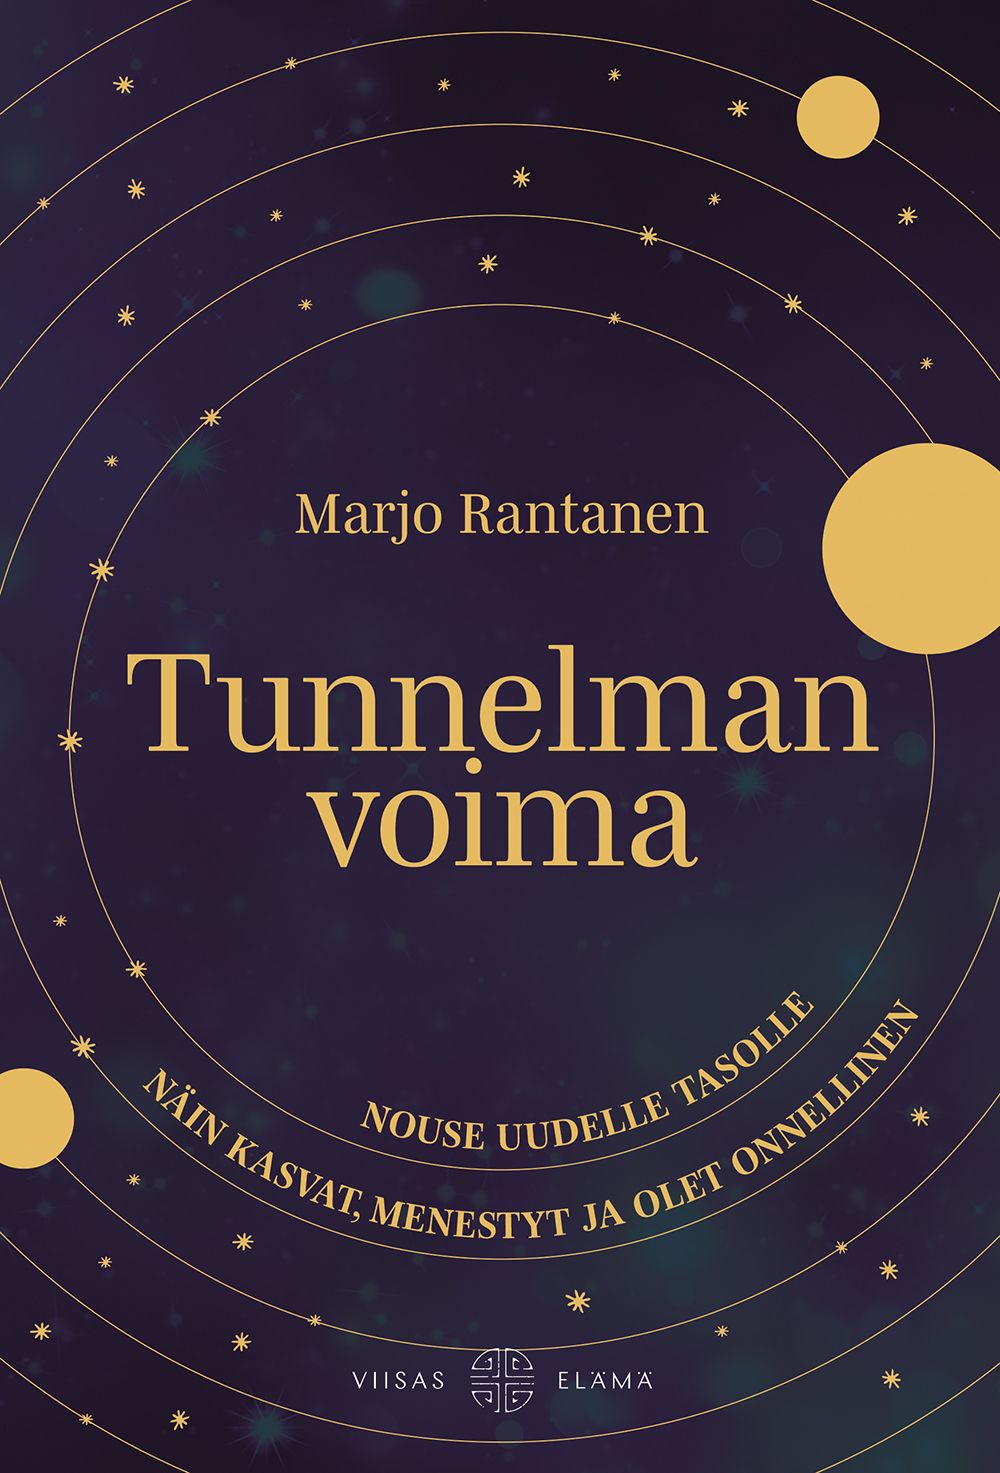 Kirjailijan Marjo Rantanen uusi kirja Tunnelman voima : nouse uudelle tasolle: näin kasvat, menestyt ja olet onnellinen